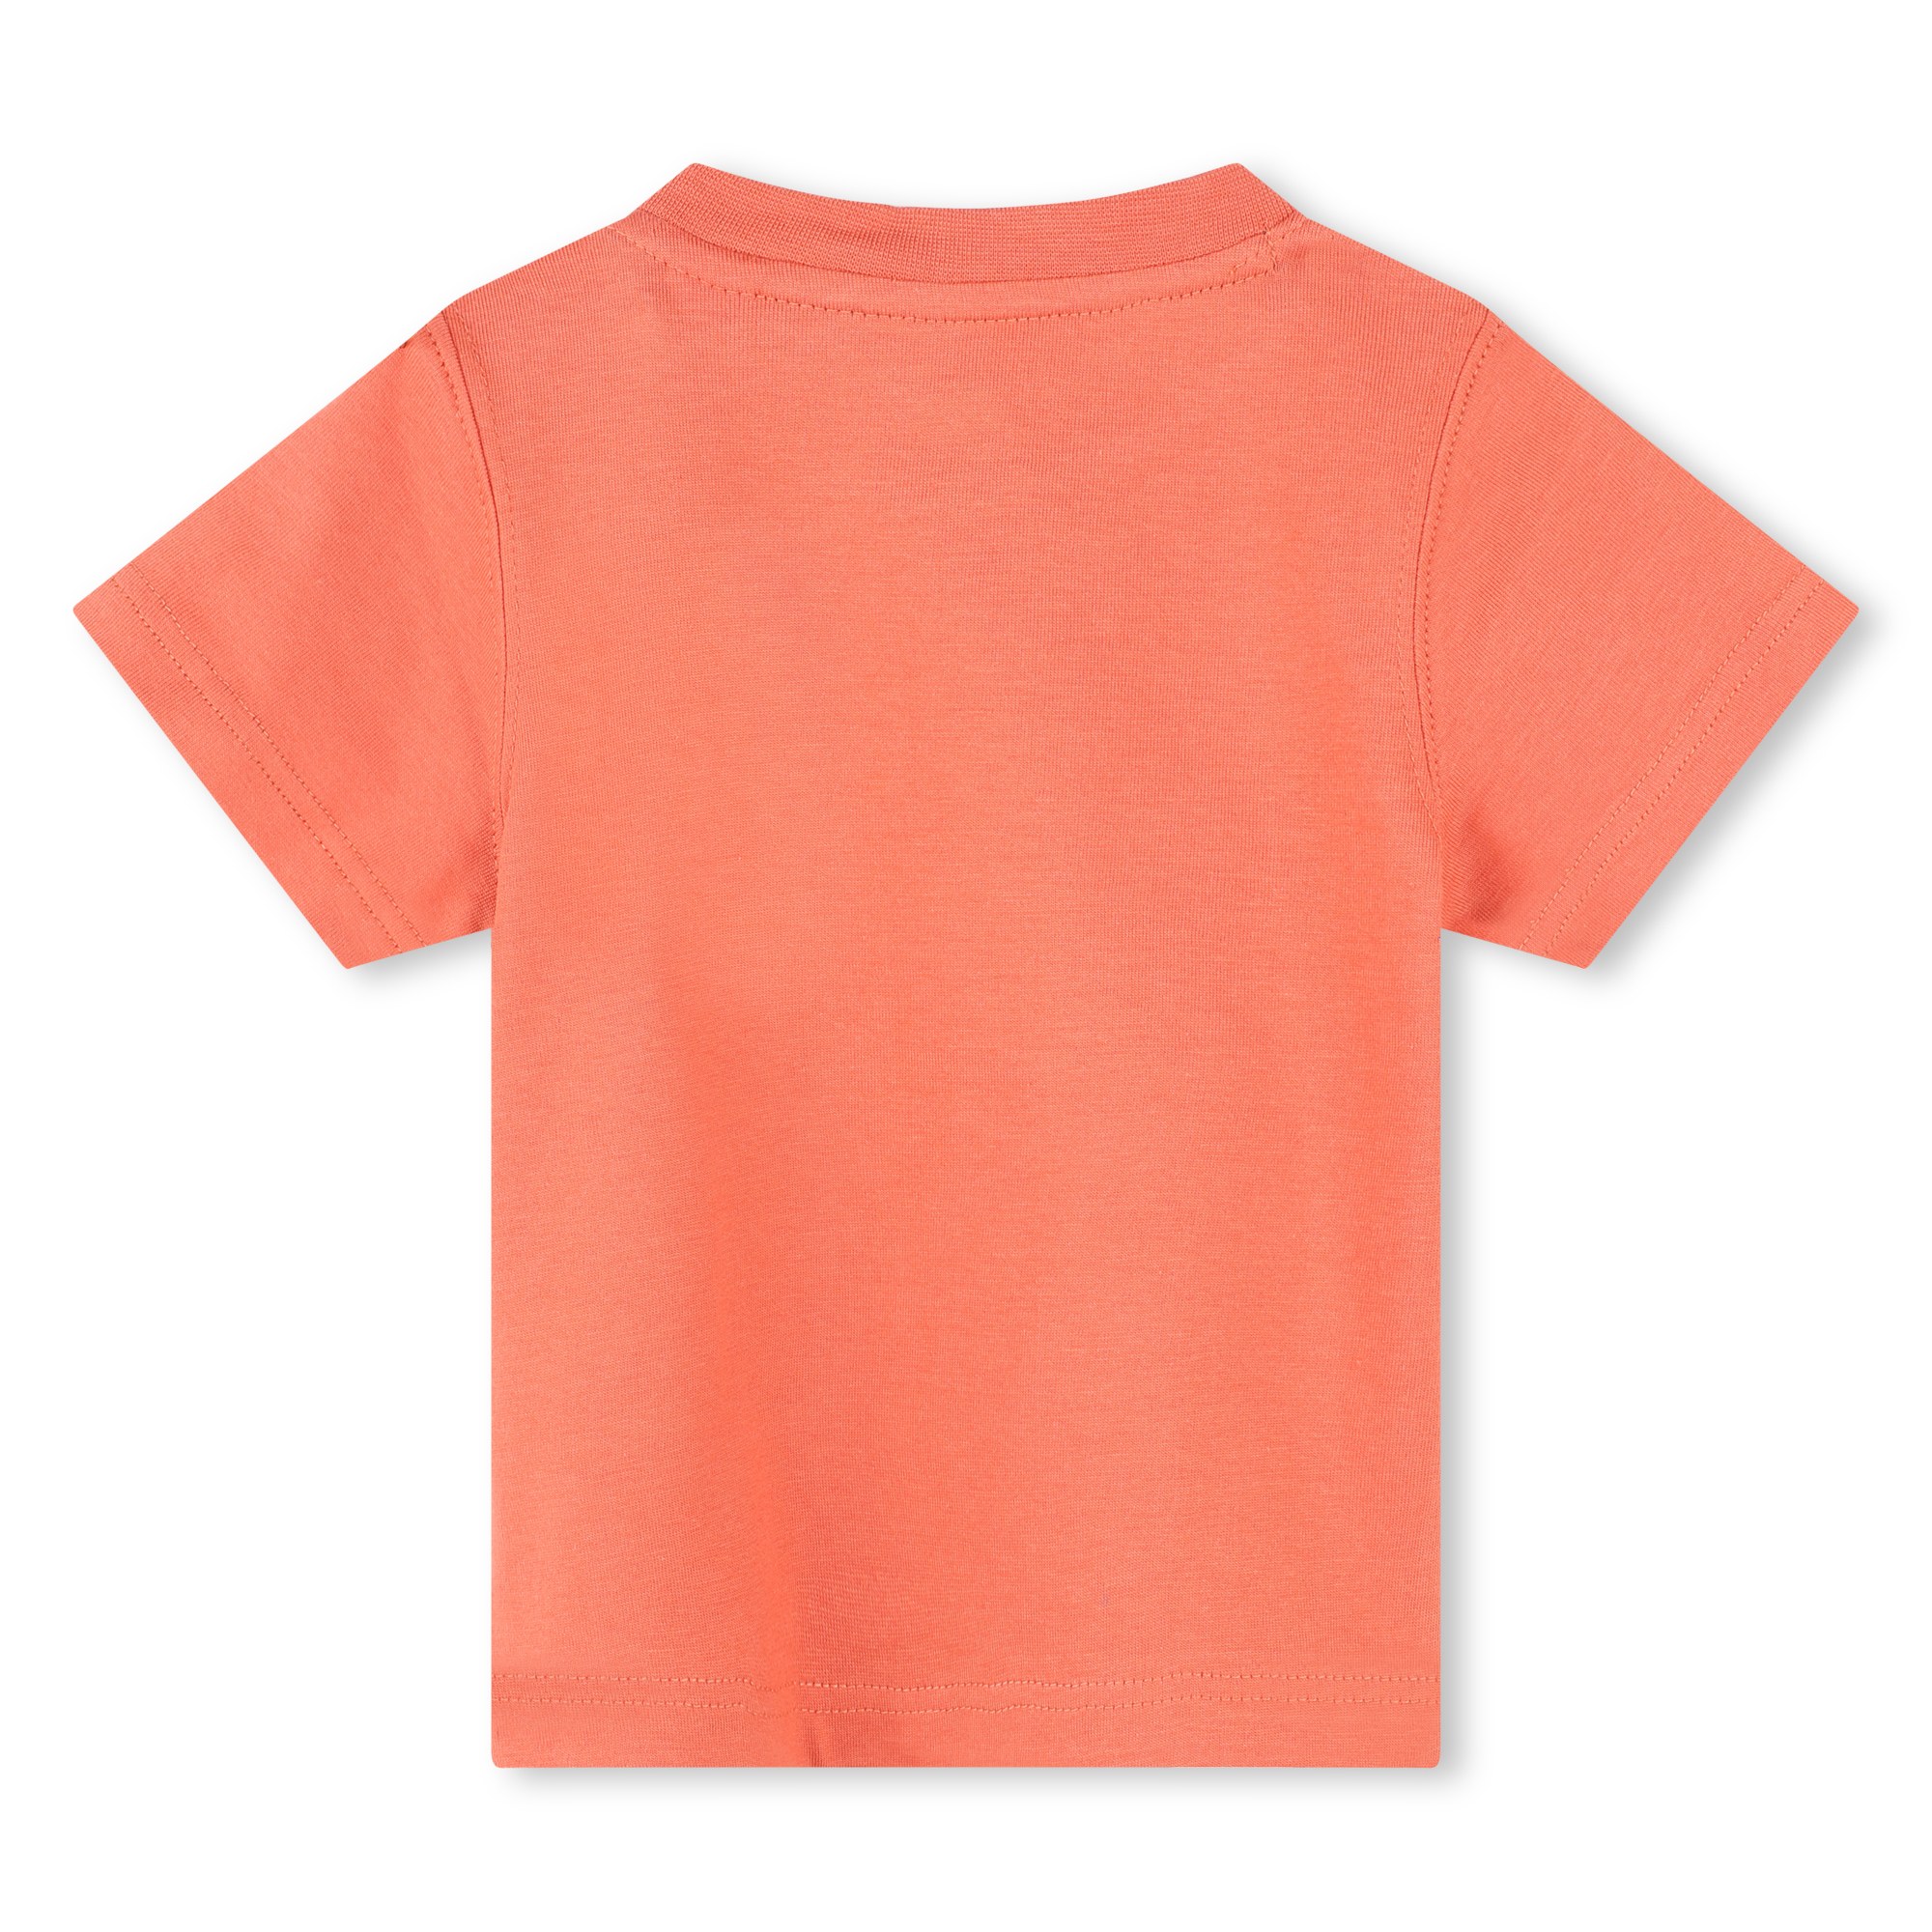 Katoenen T-shirt (drukknopen) TIMBERLAND Voor